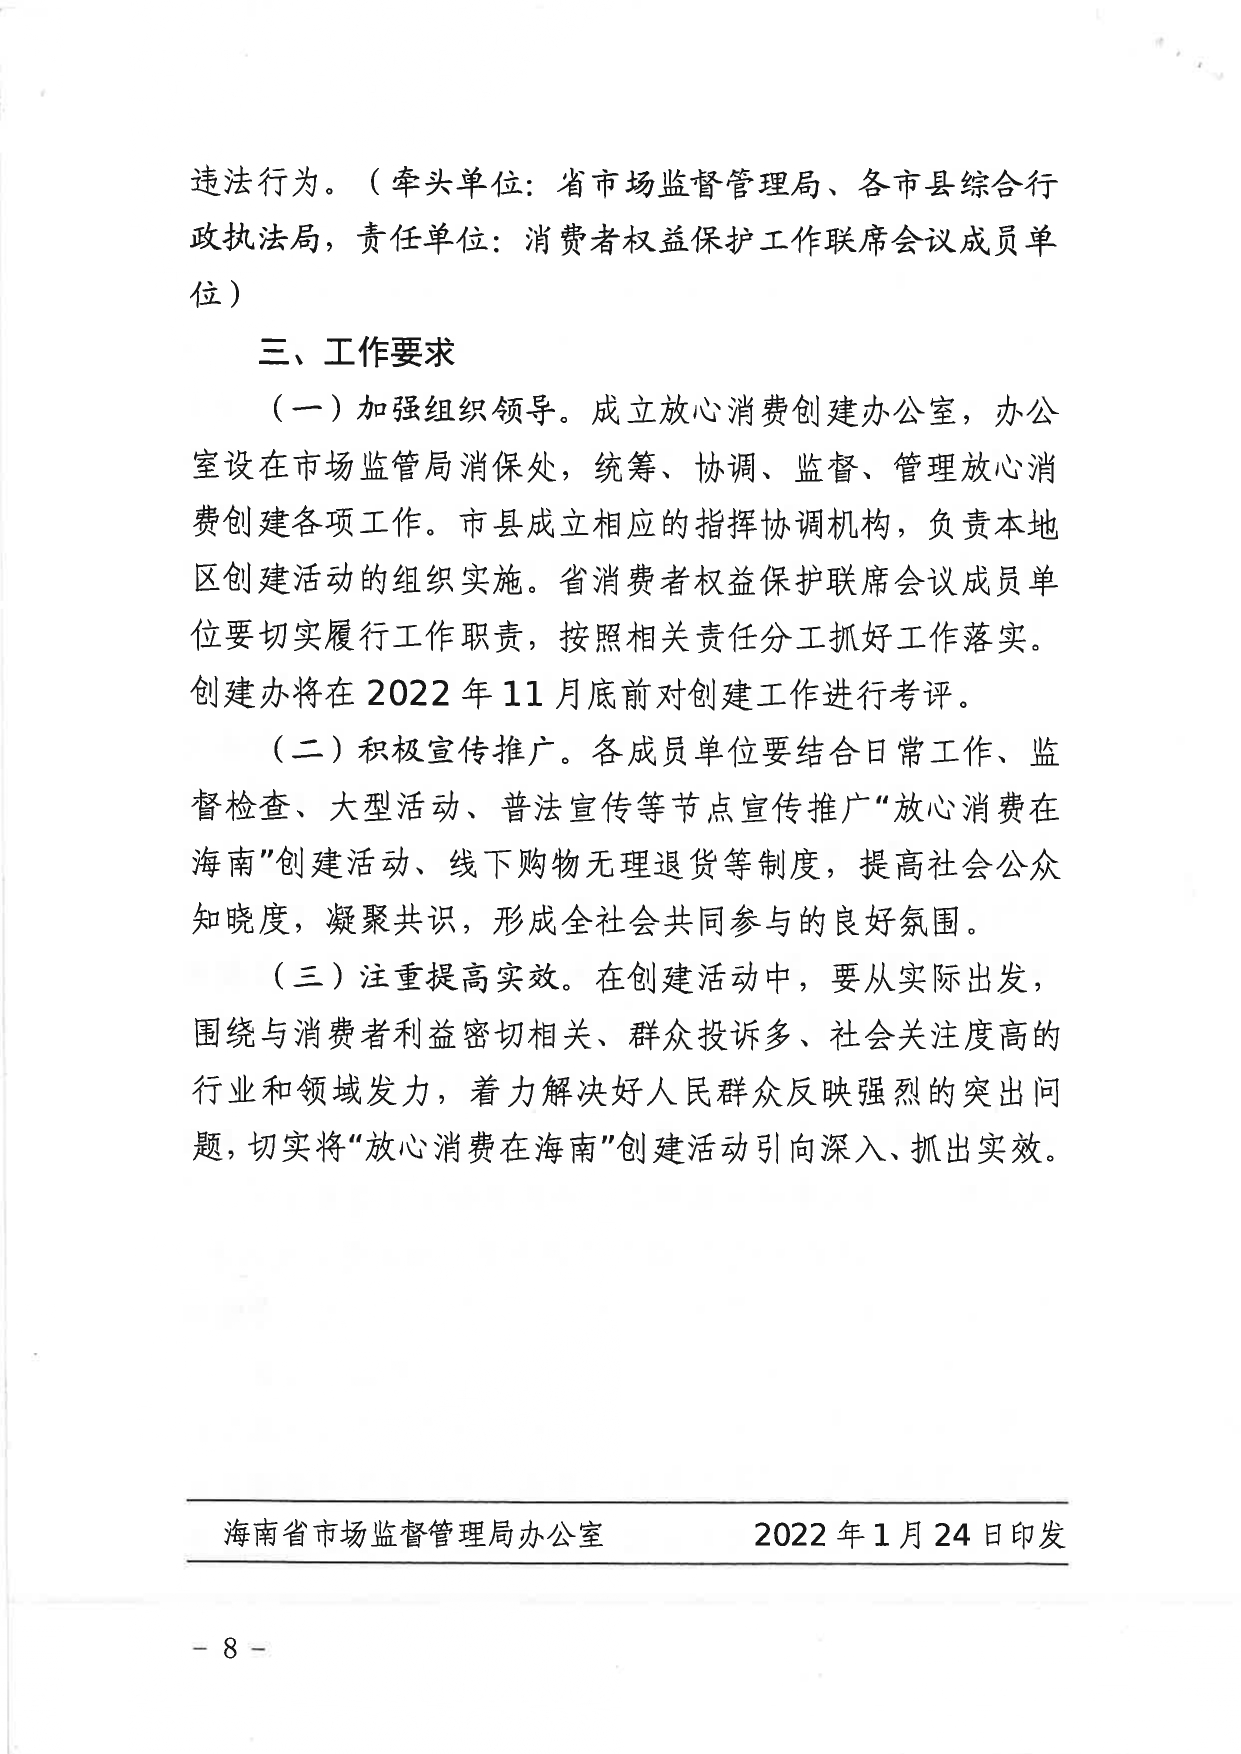 2022.2.8.（正文副本）《海南省市场监督管局等29单位＜关于印发2022年“放心消费在海南”创建工作实施方案＞的通知》_page-0008.jpg